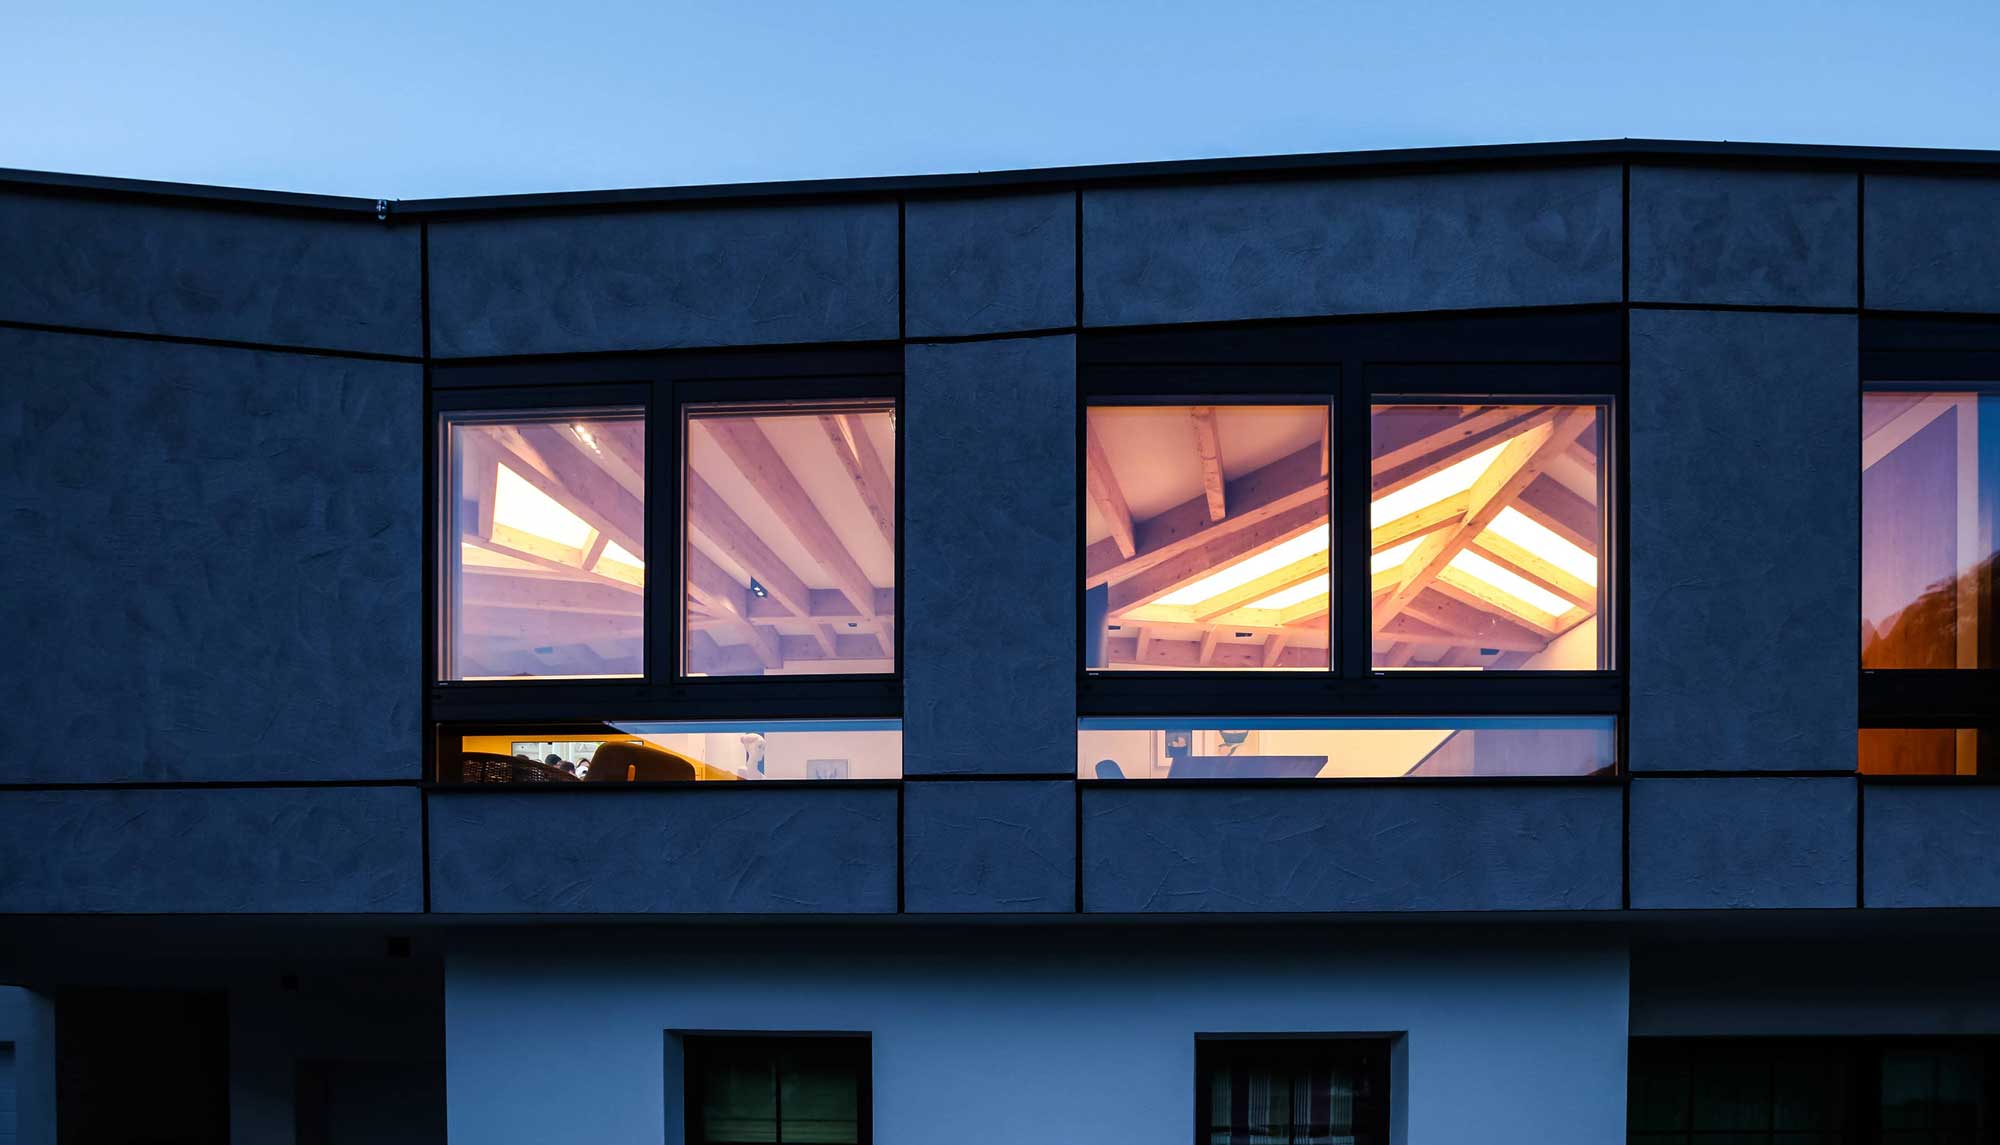 Licht strahlt durchs Fenster bei Dunkelheit und Dachstuhl kommt zur Geltung | Aufstockung Architekt